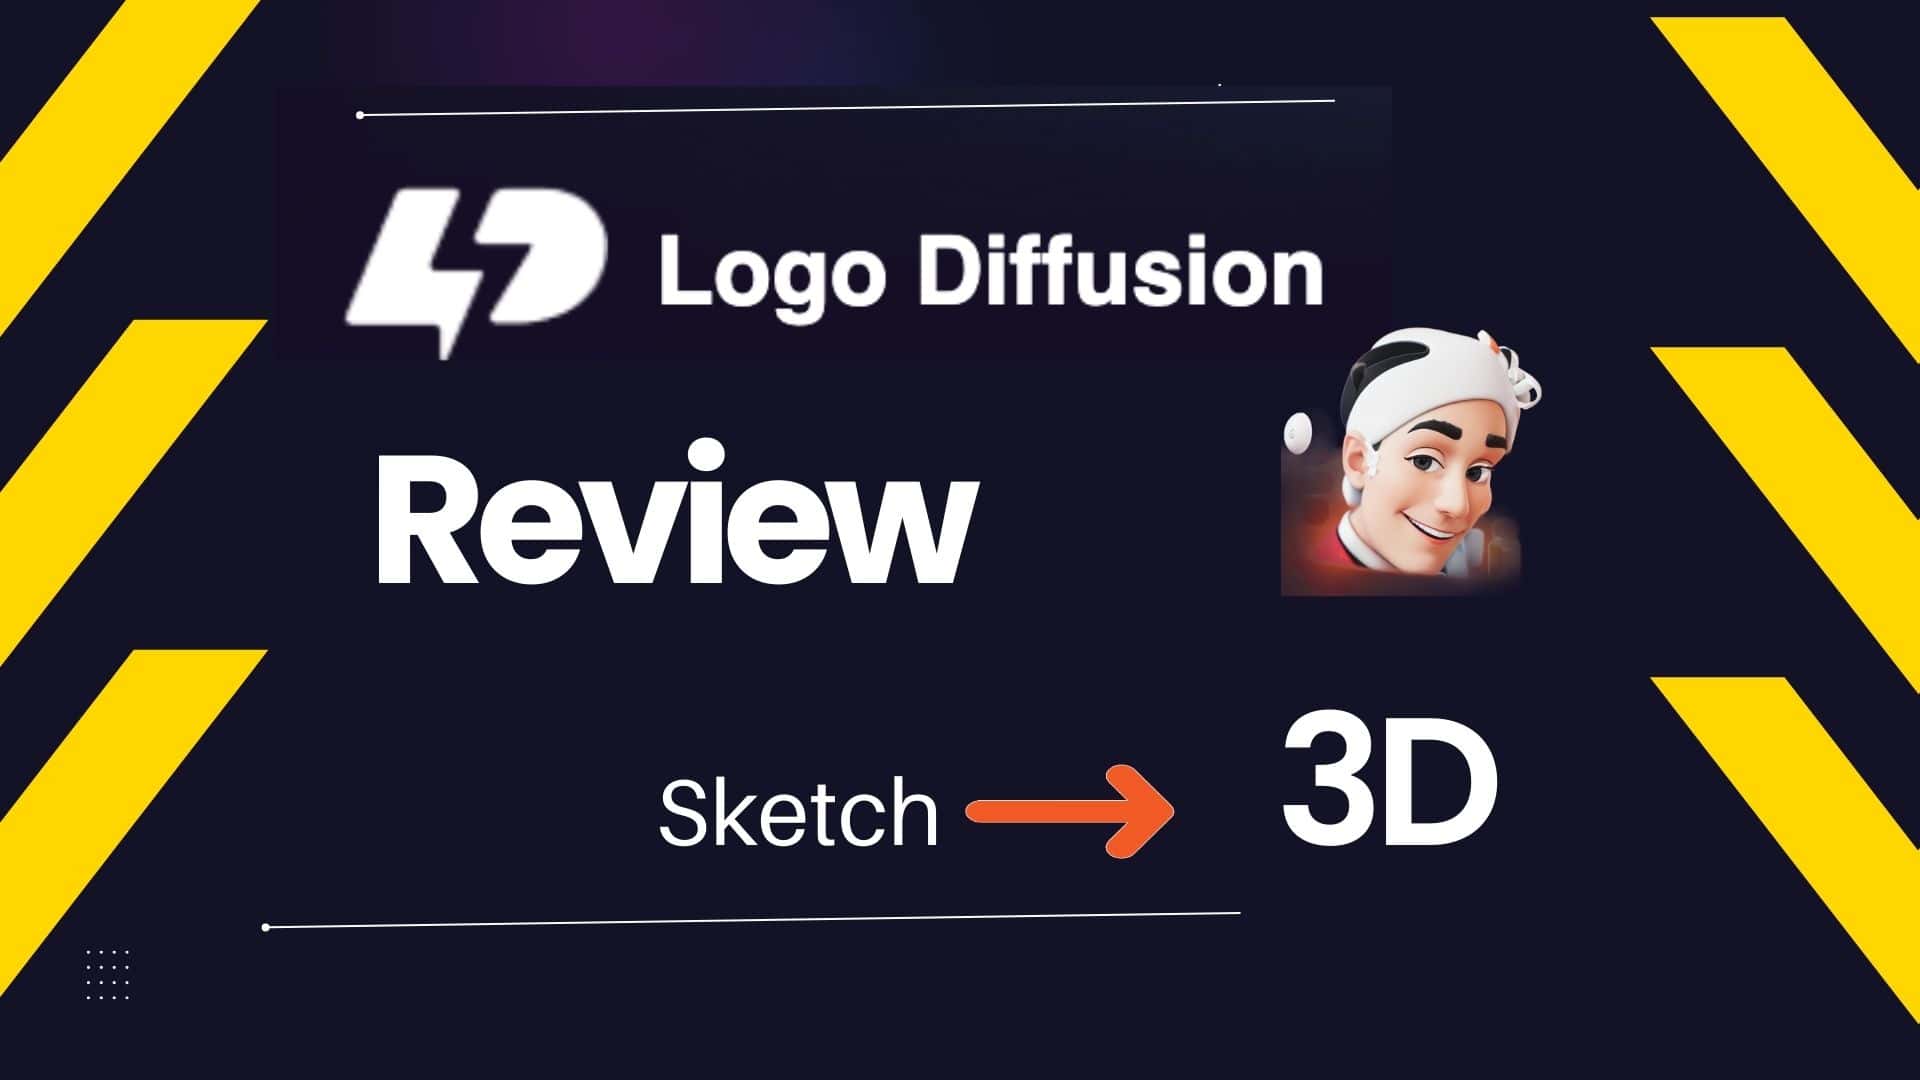 logo diffusion review